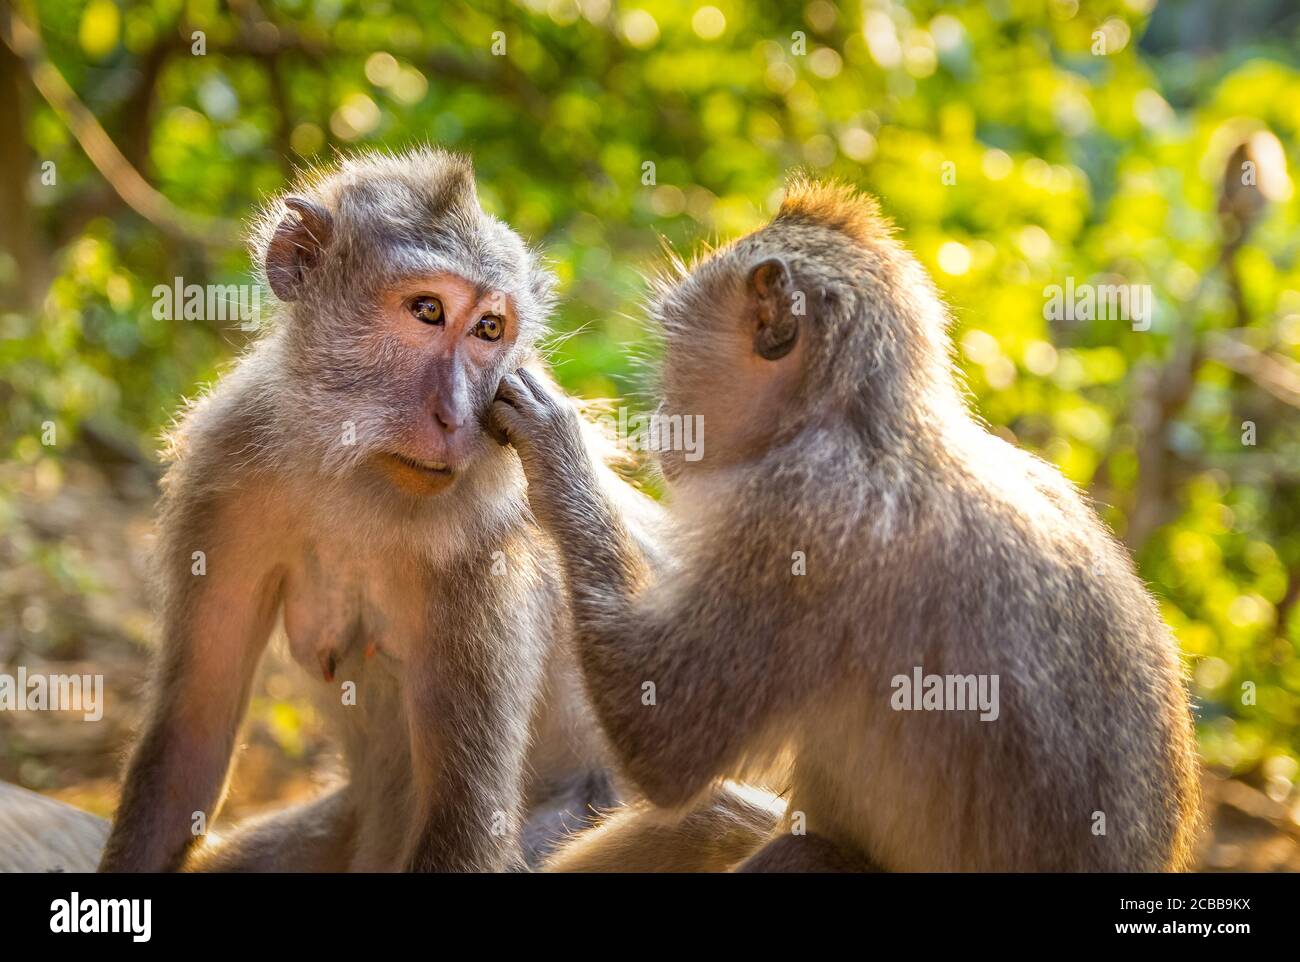 cute monkeys in love